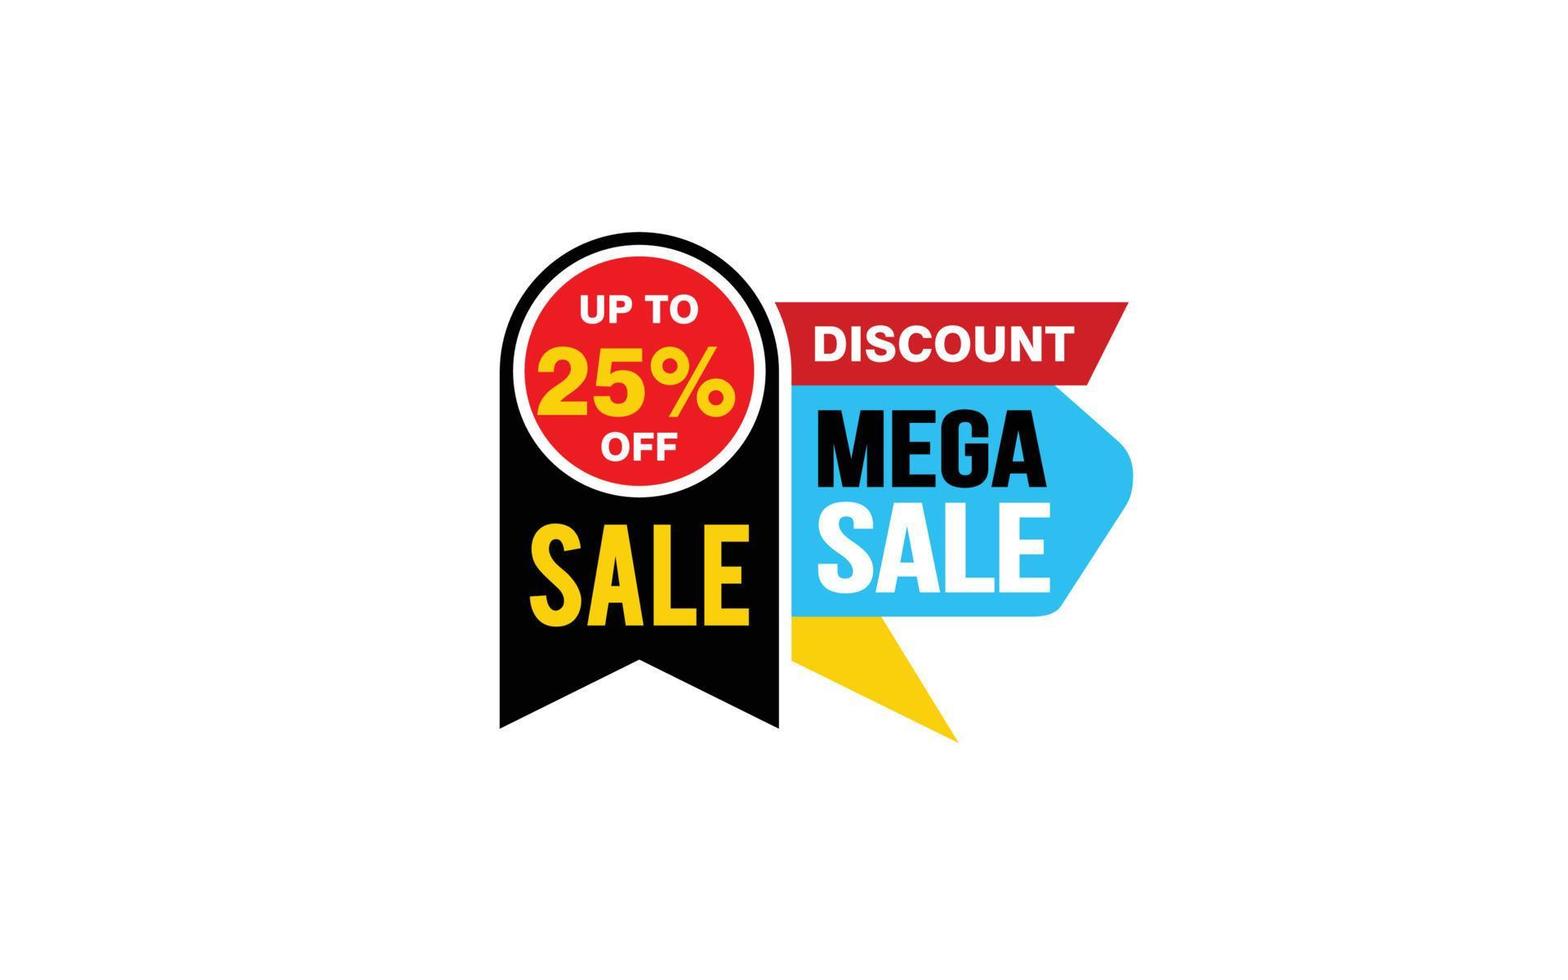 Oferta de mega venta del 25 por ciento, liquidación, diseño de banner de promoción con estilo de etiqueta. vector